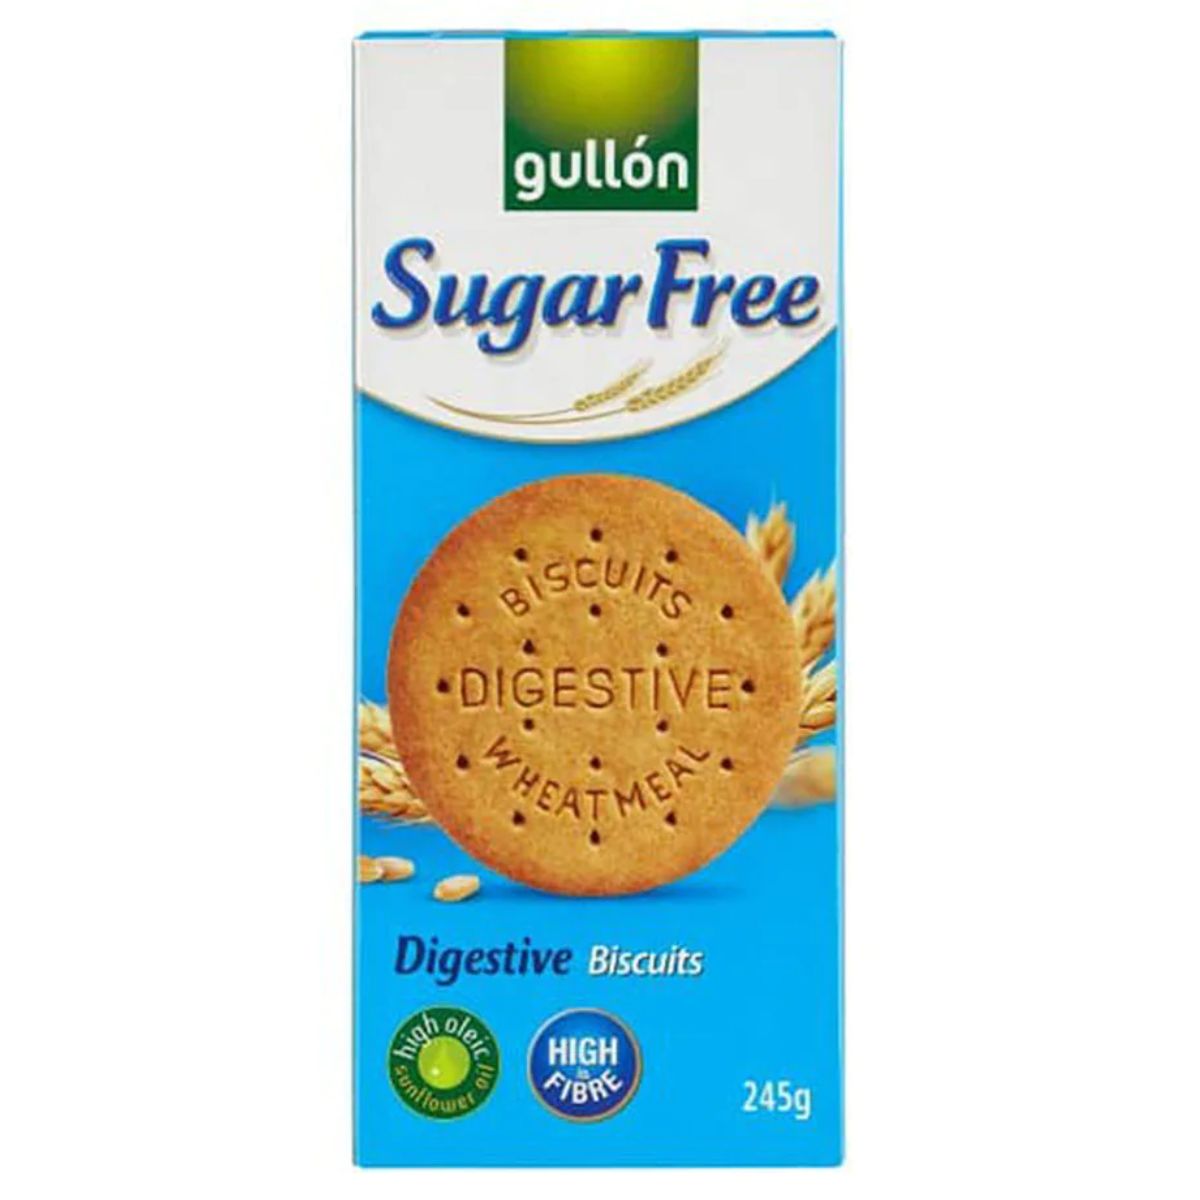 A box of Gullon - Sugar Free Digestive Biscuits - 245g.